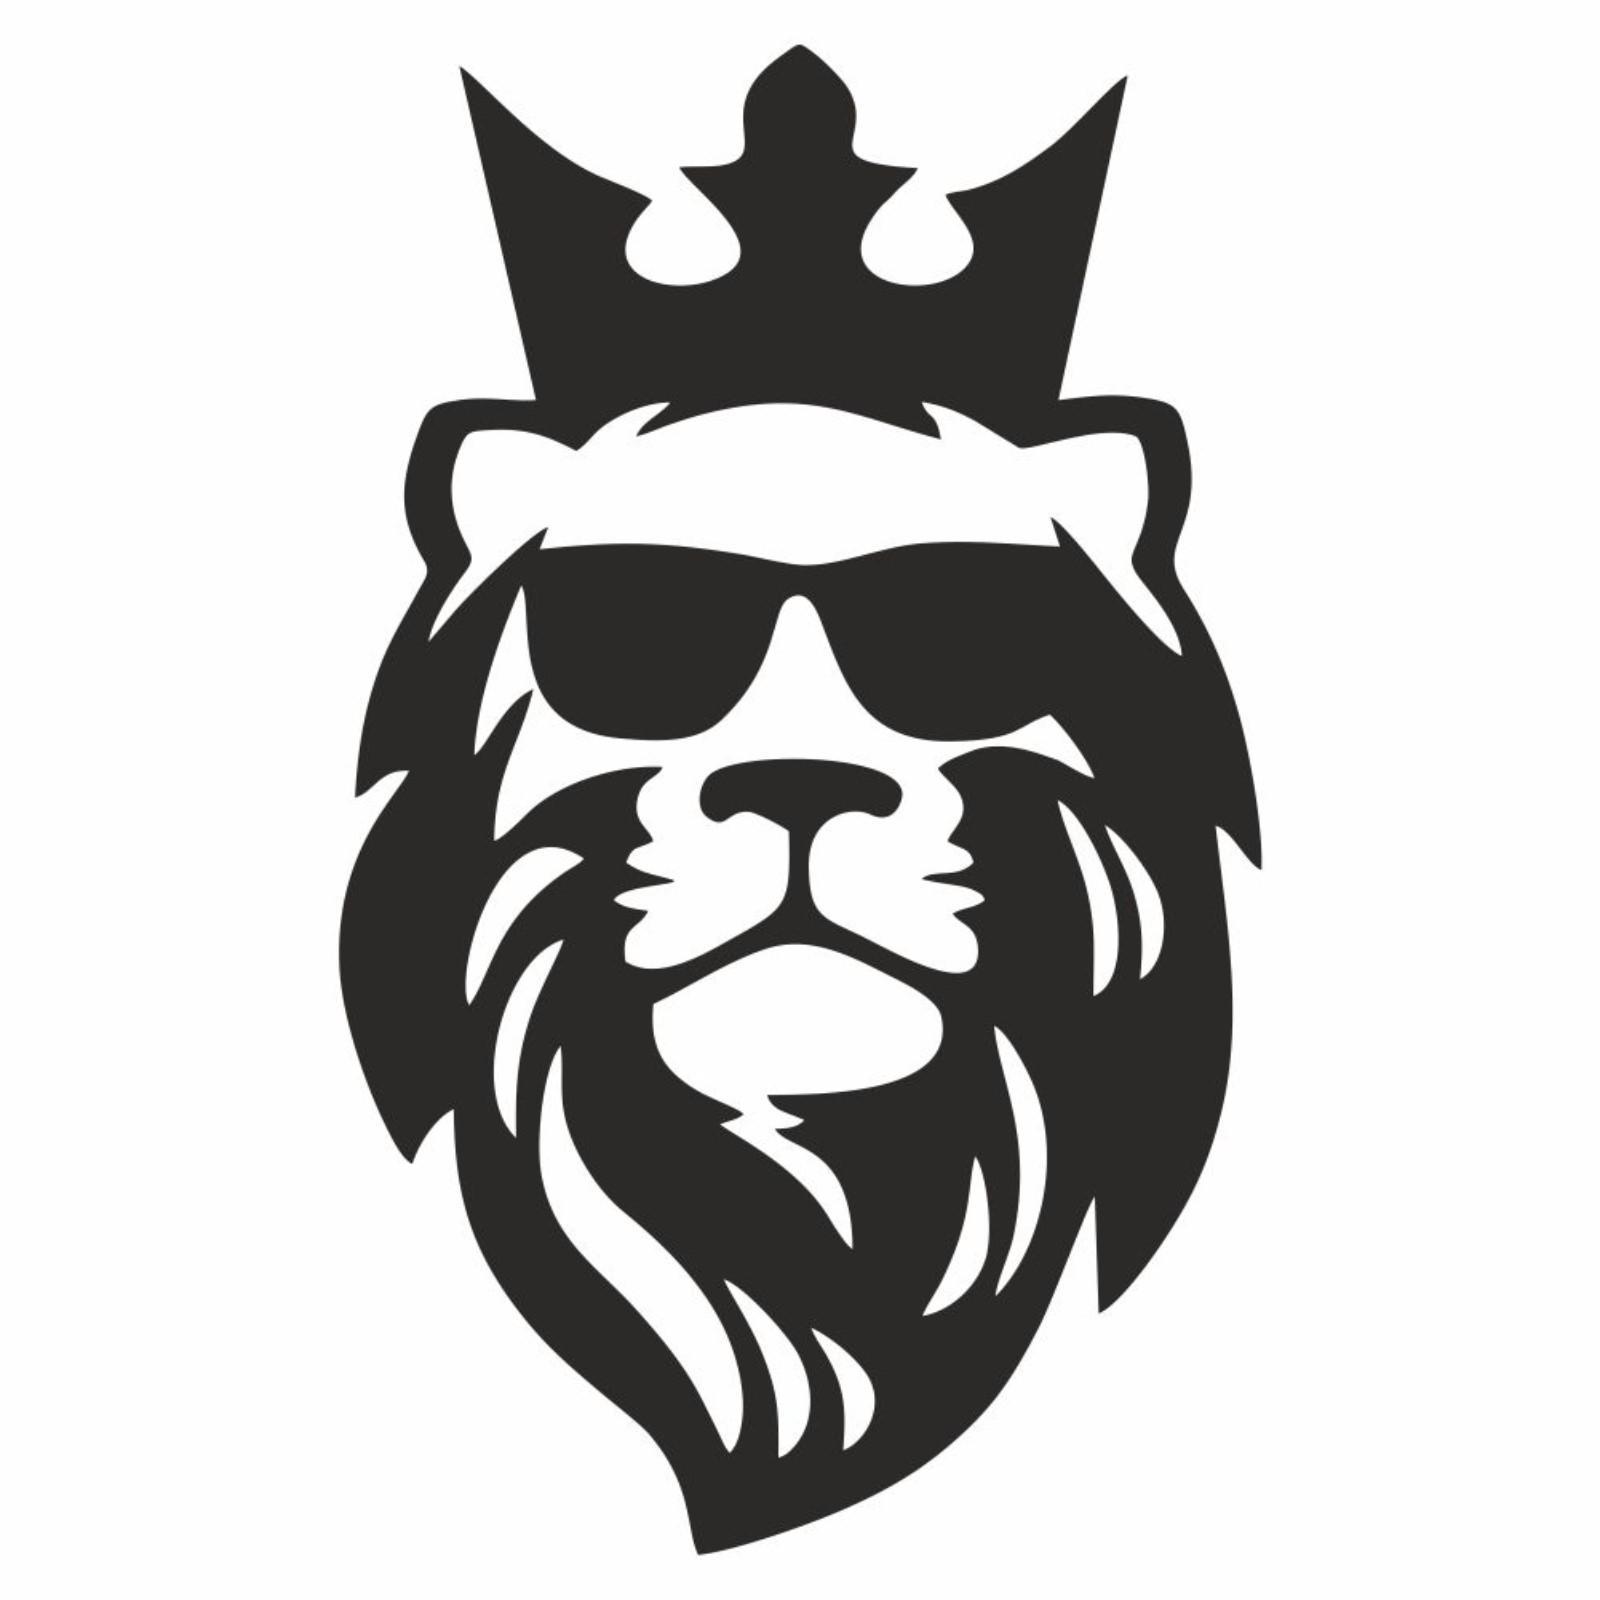 Лев корона Изображения – скачать бесплатно на Freepik